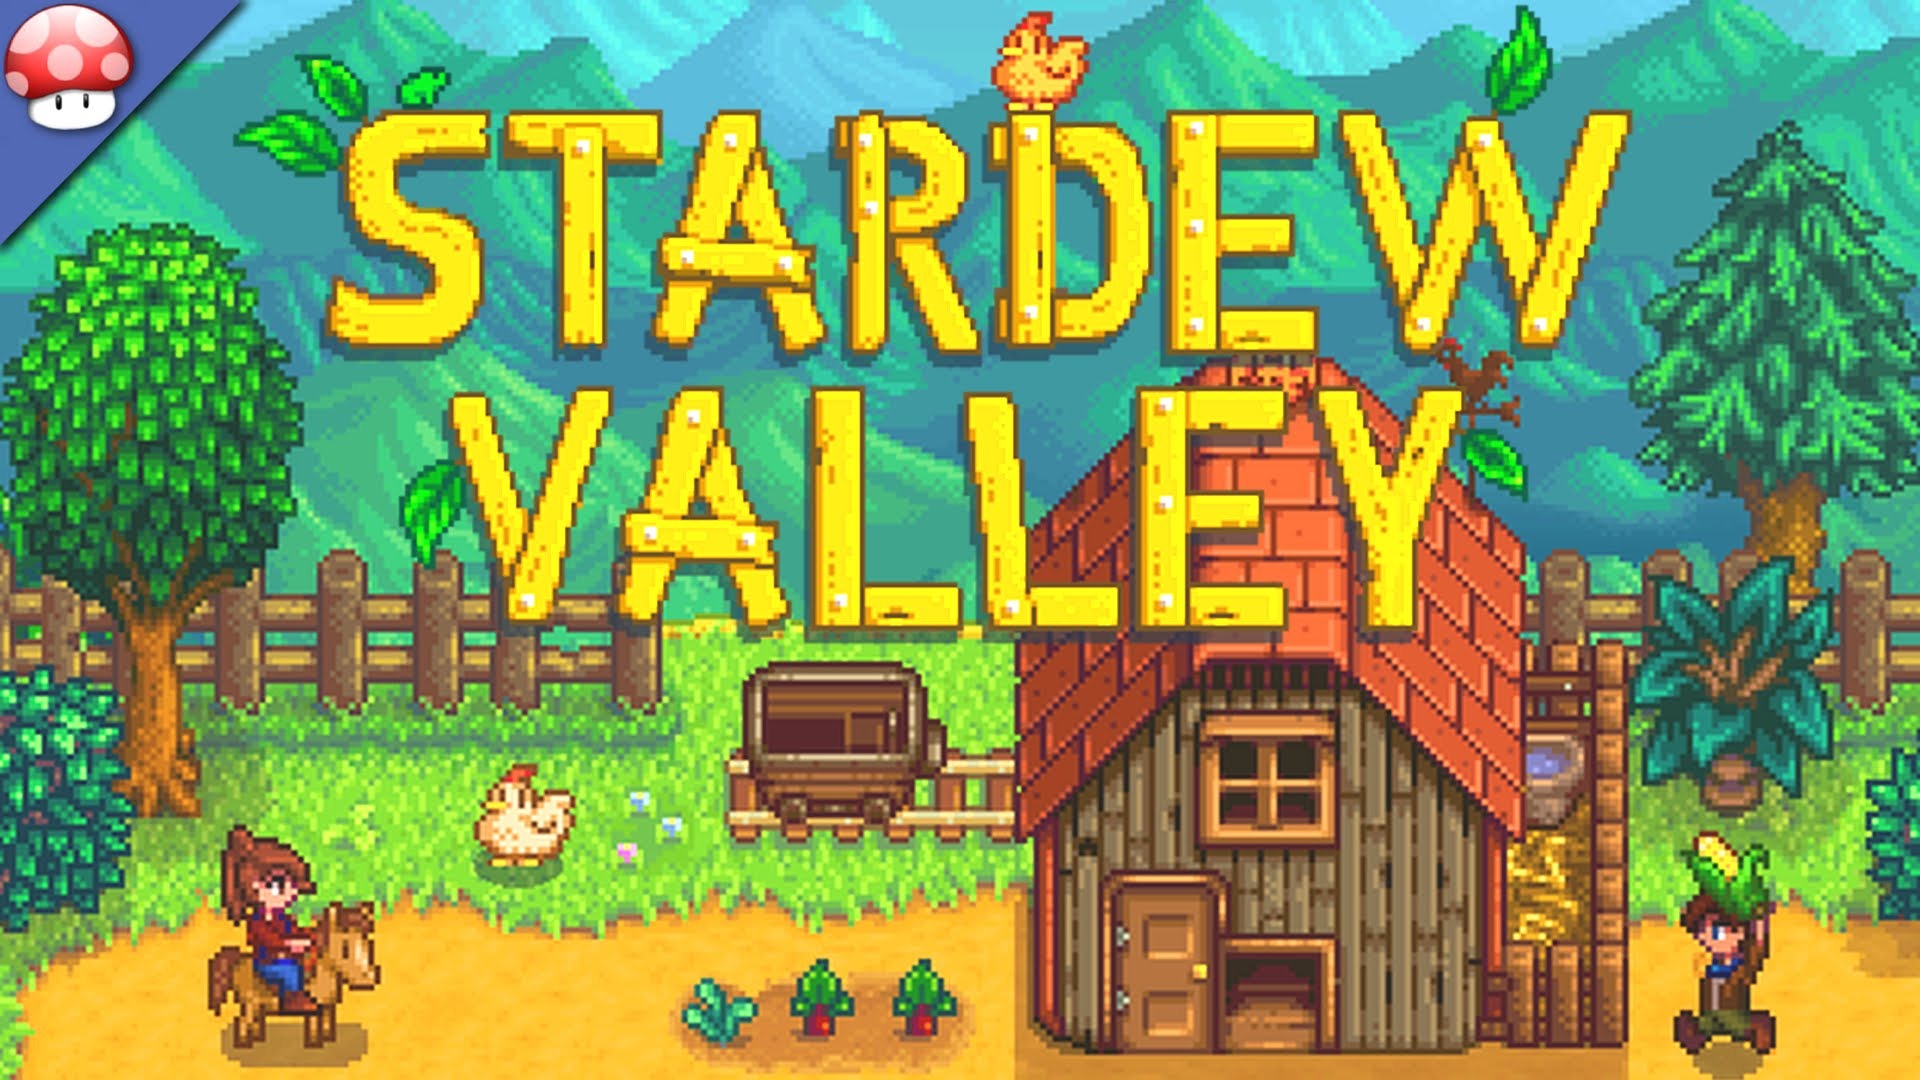 Stardew Valley 4 - Game Grumps Shop